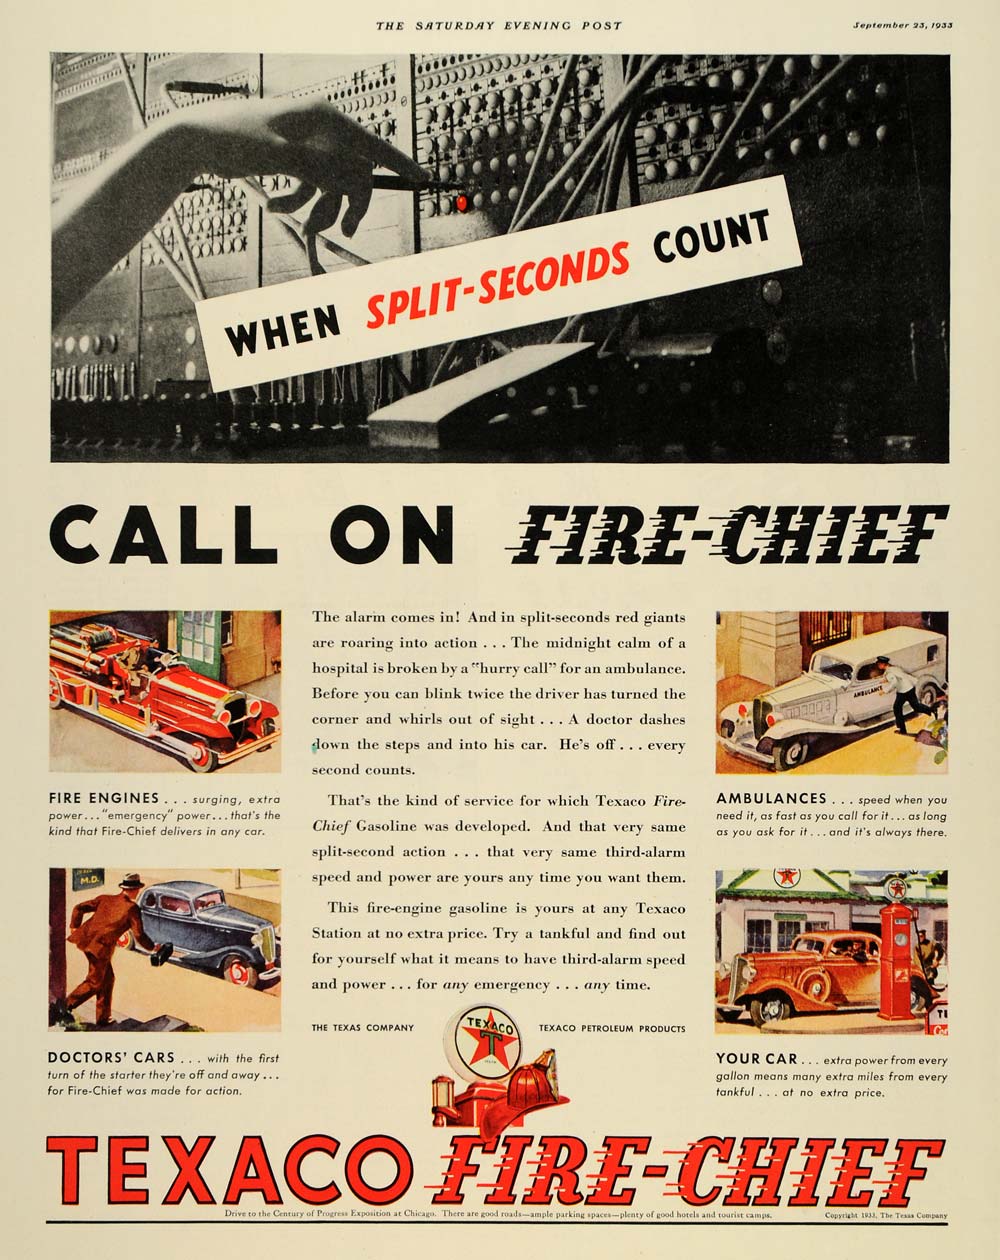 1933 Ad Texas Company Texaco Fire-Chief Gasoline Engine - ORIGINAL SEP3